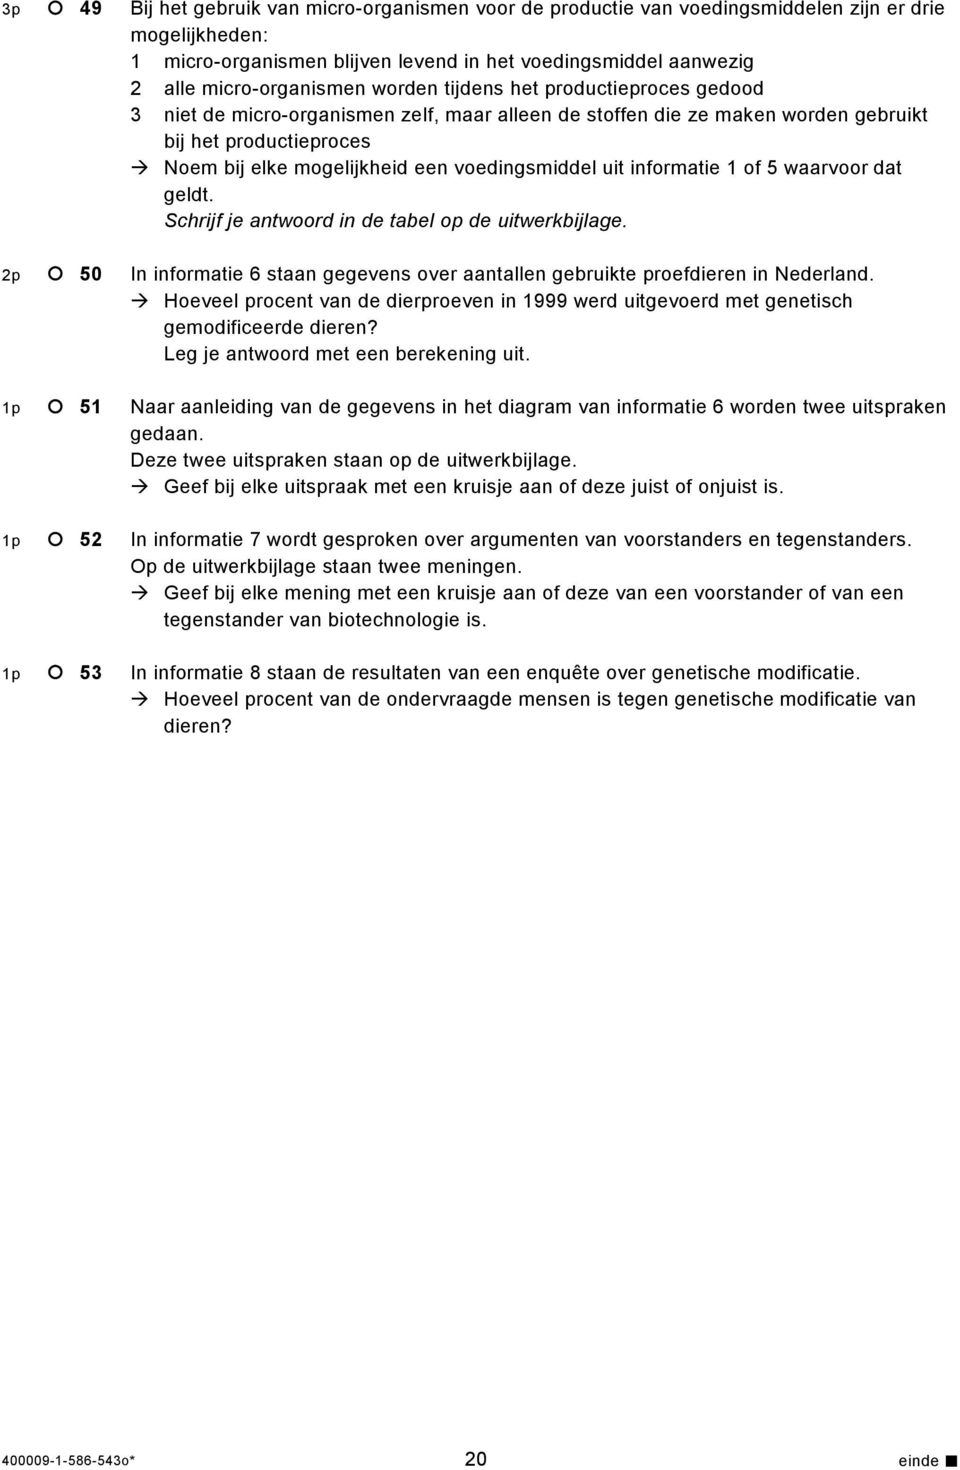 uit informatie 1 of 5 waarvoor dat geldt. Schrijf je antwoord in de tabel op de uitwerkbijlage. 2p 50 In informatie 6 staan gegevens over aantallen gebruikte proefdieren in Nederland.